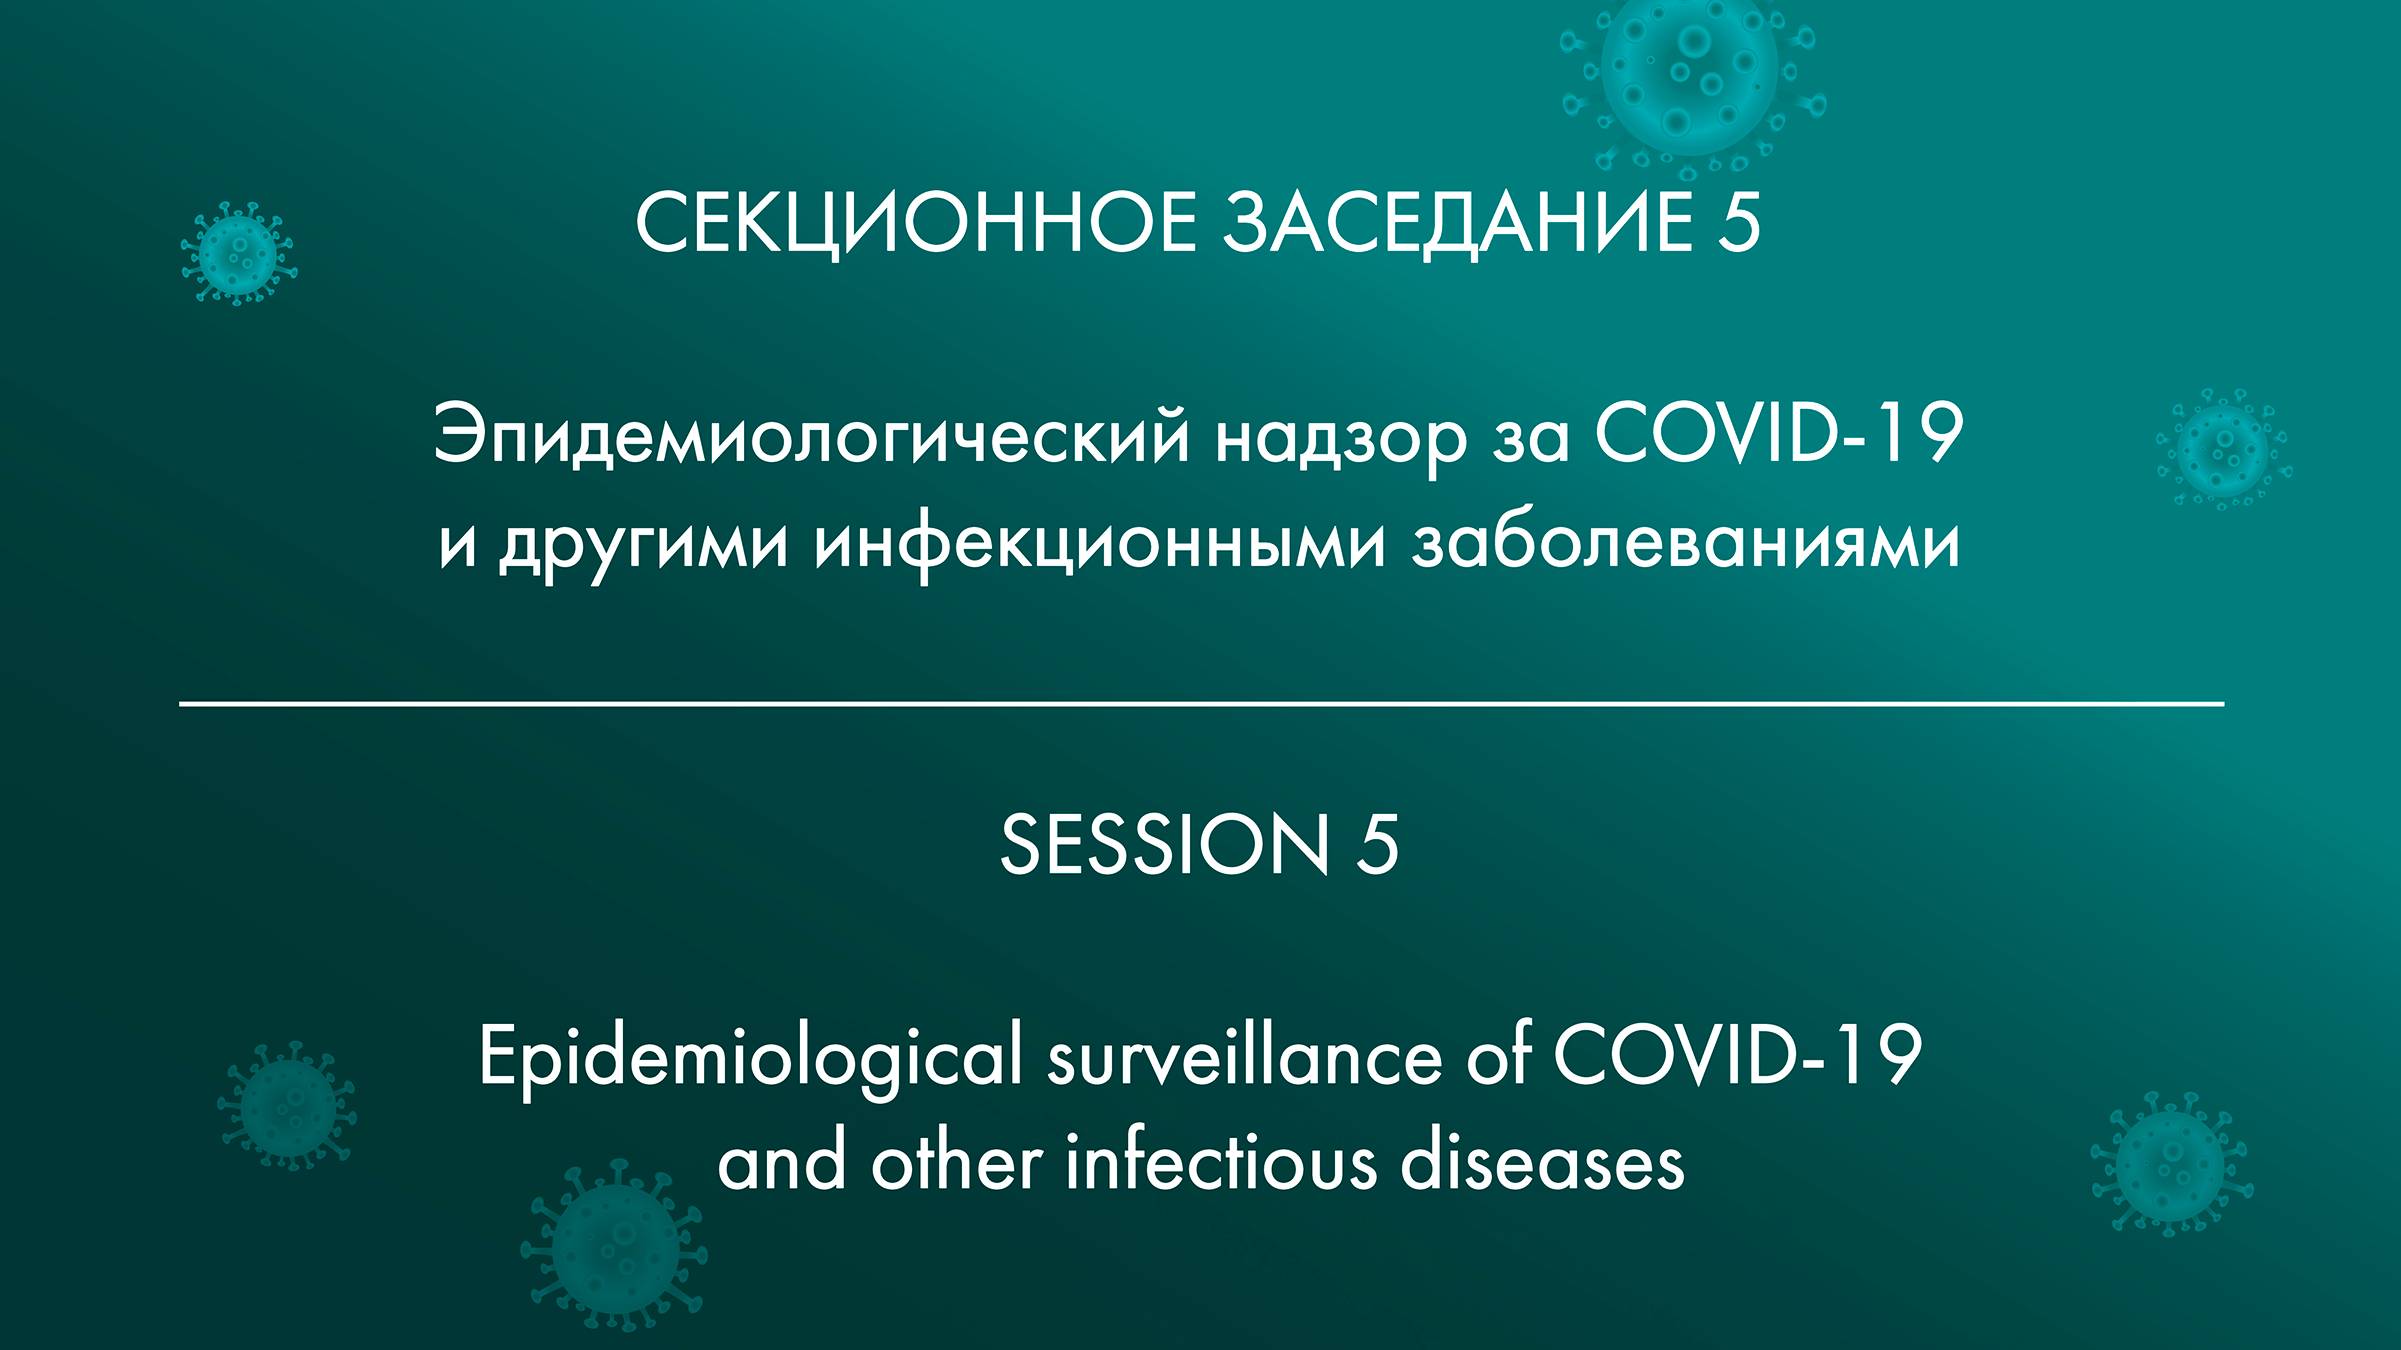 5 СЕКЦИОННОЕ ЗАСЕДАНИЕ Эпидемиологический надзор за COVID-19 и другими инфекционными заболеваниями